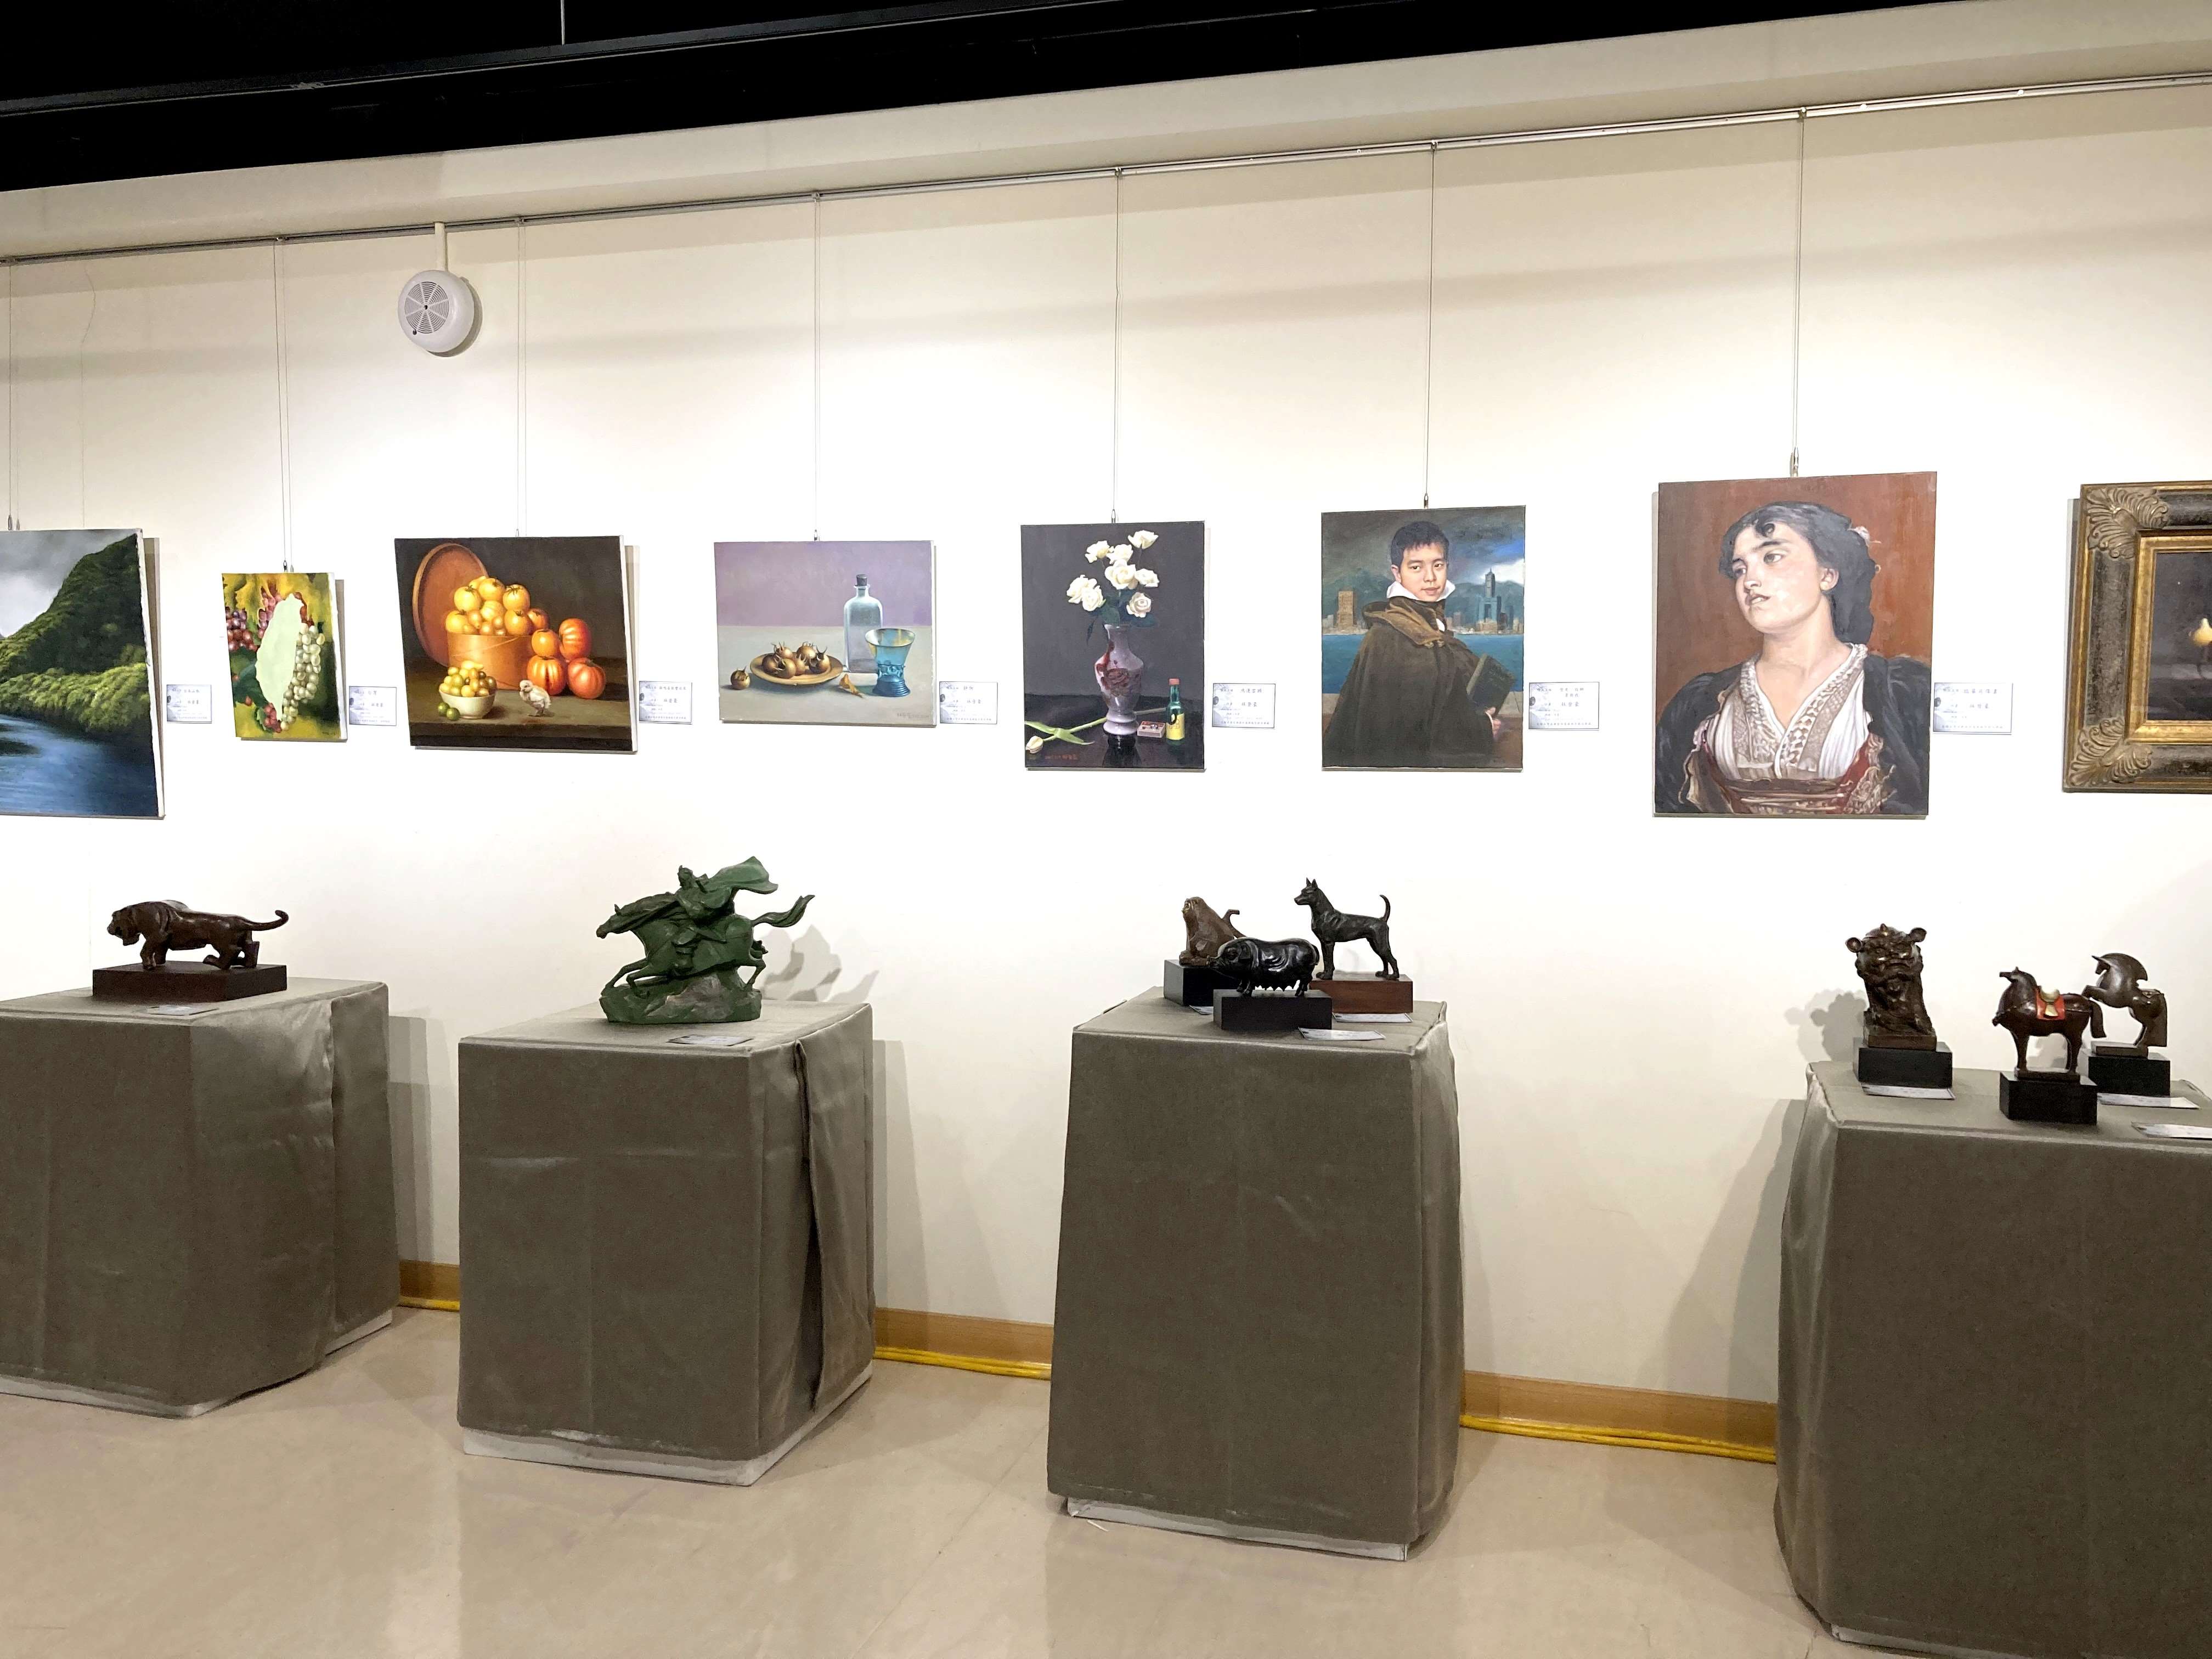 支持台湾古典艺术教育  四位艺术家举办义卖联展